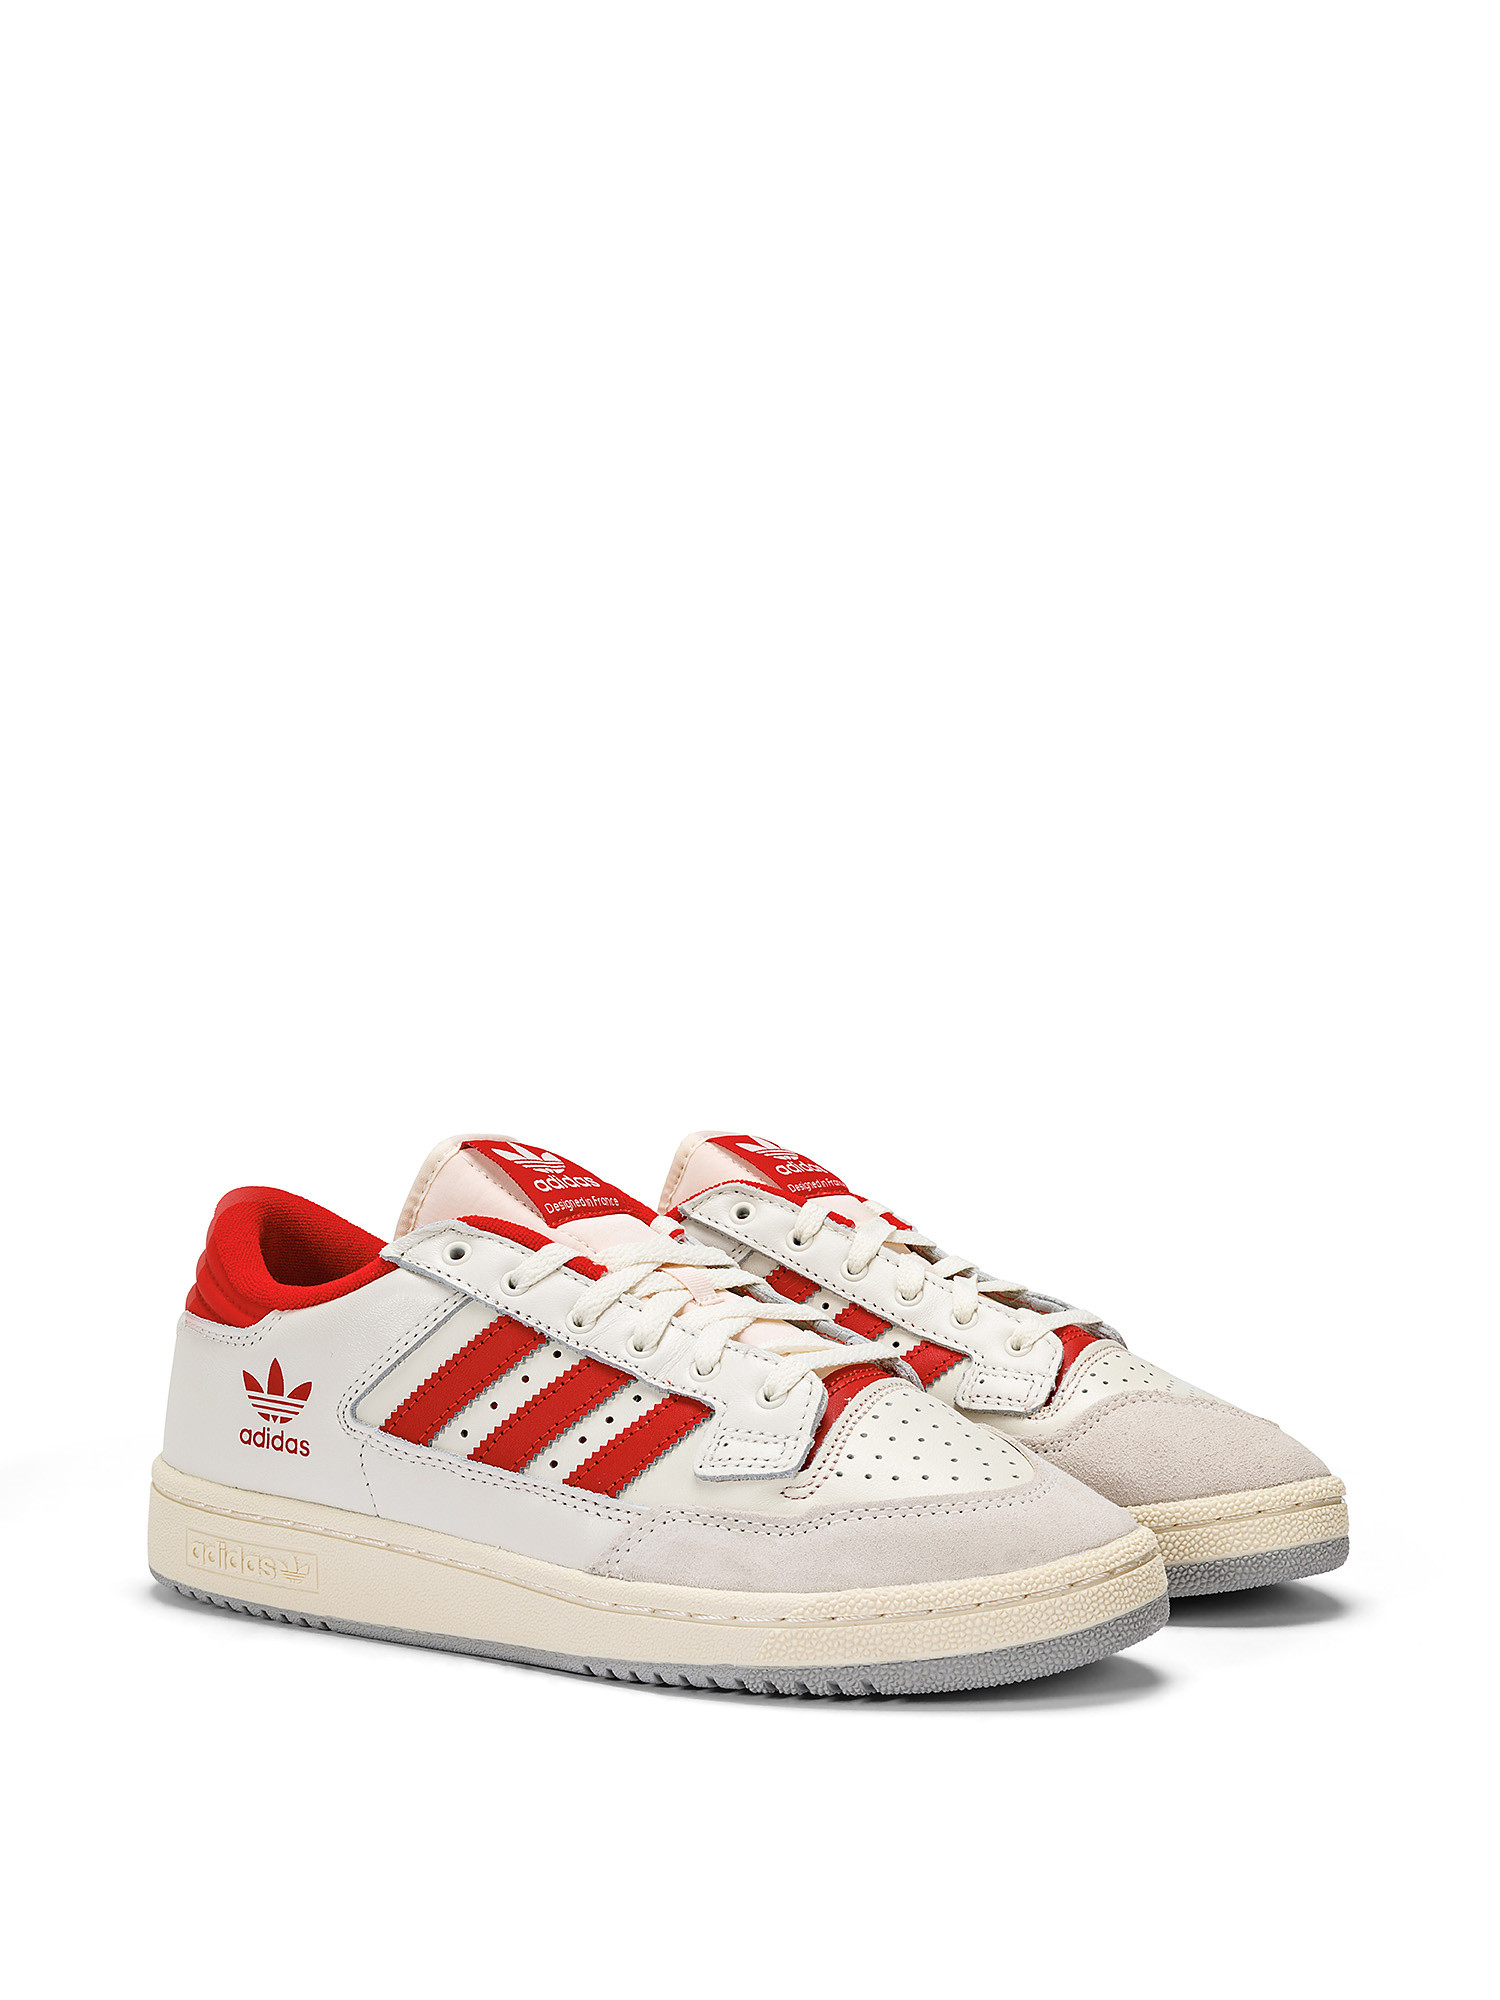 Adidas - Scarpe Centennial 85 low, Bianco, large image number 8